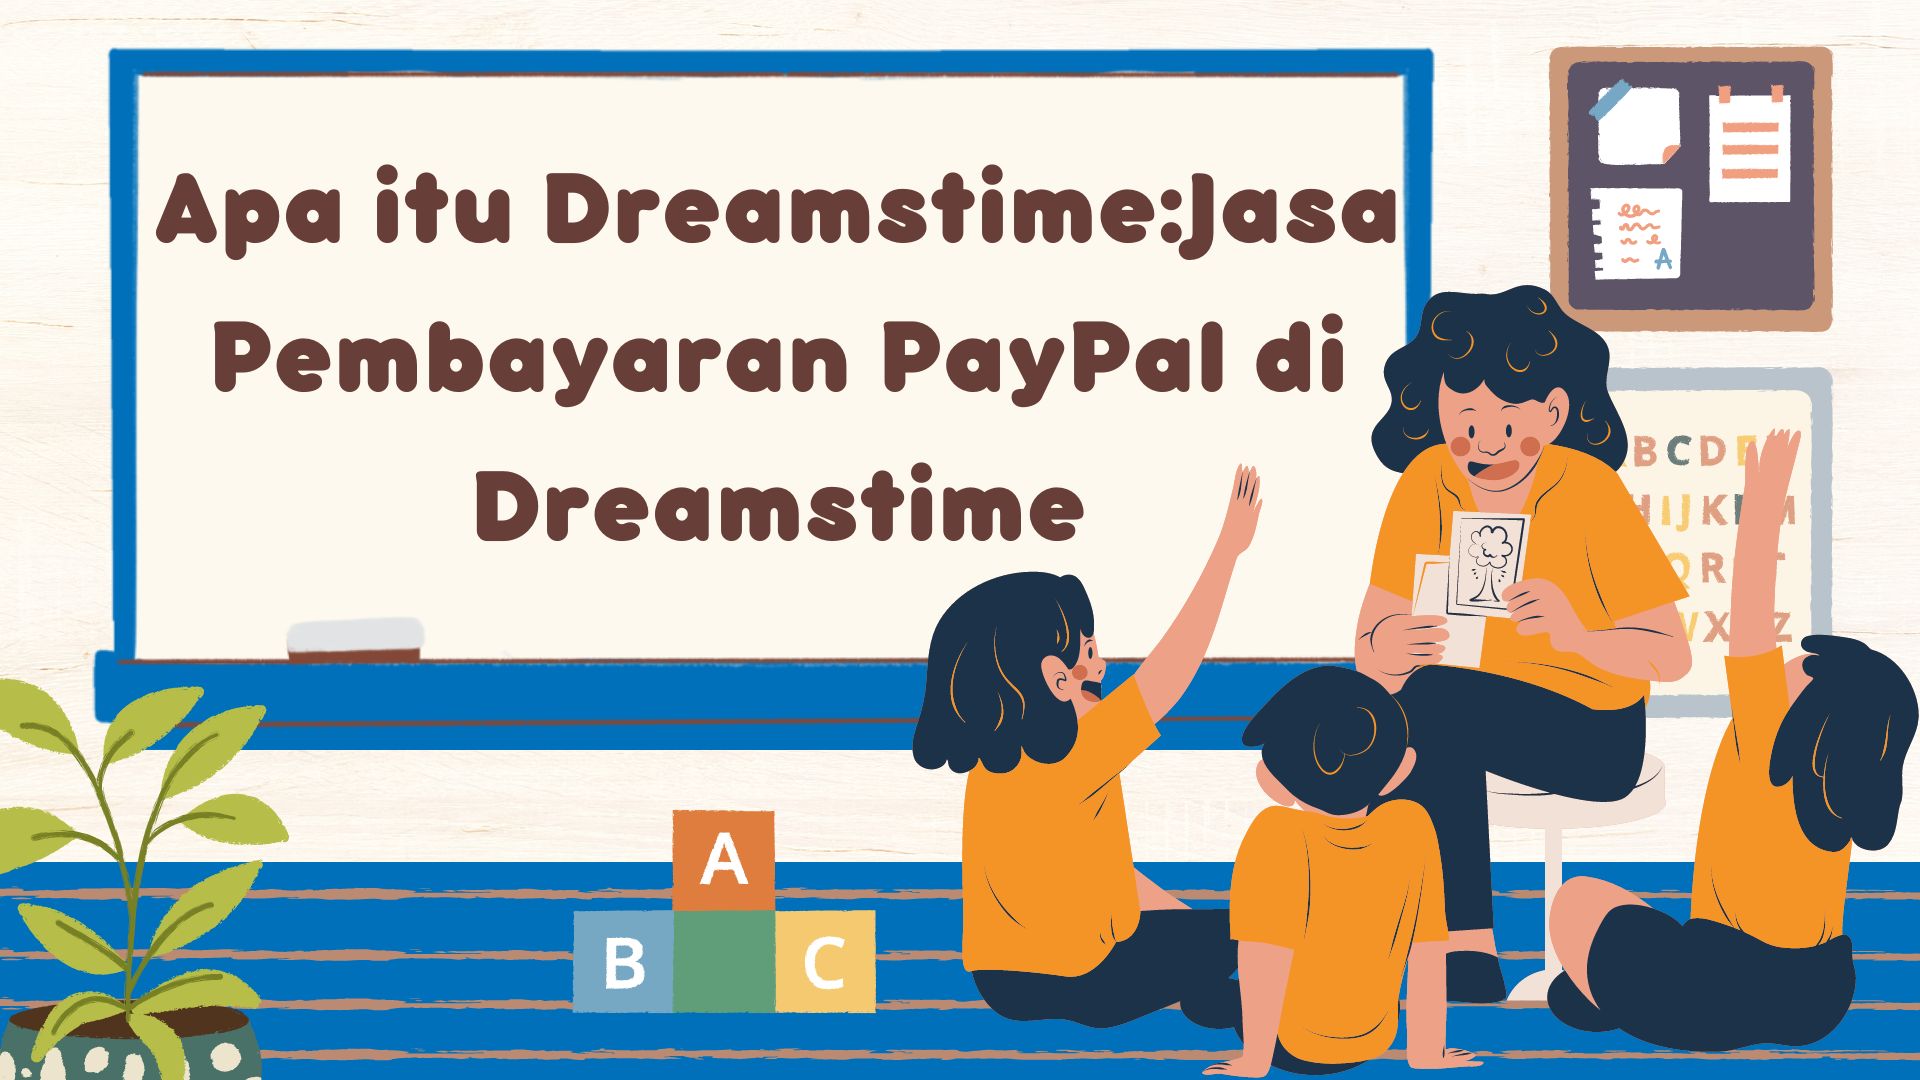 Apa itu Dreamstime:Jasa Pembayaran PayPal di Dreamstime